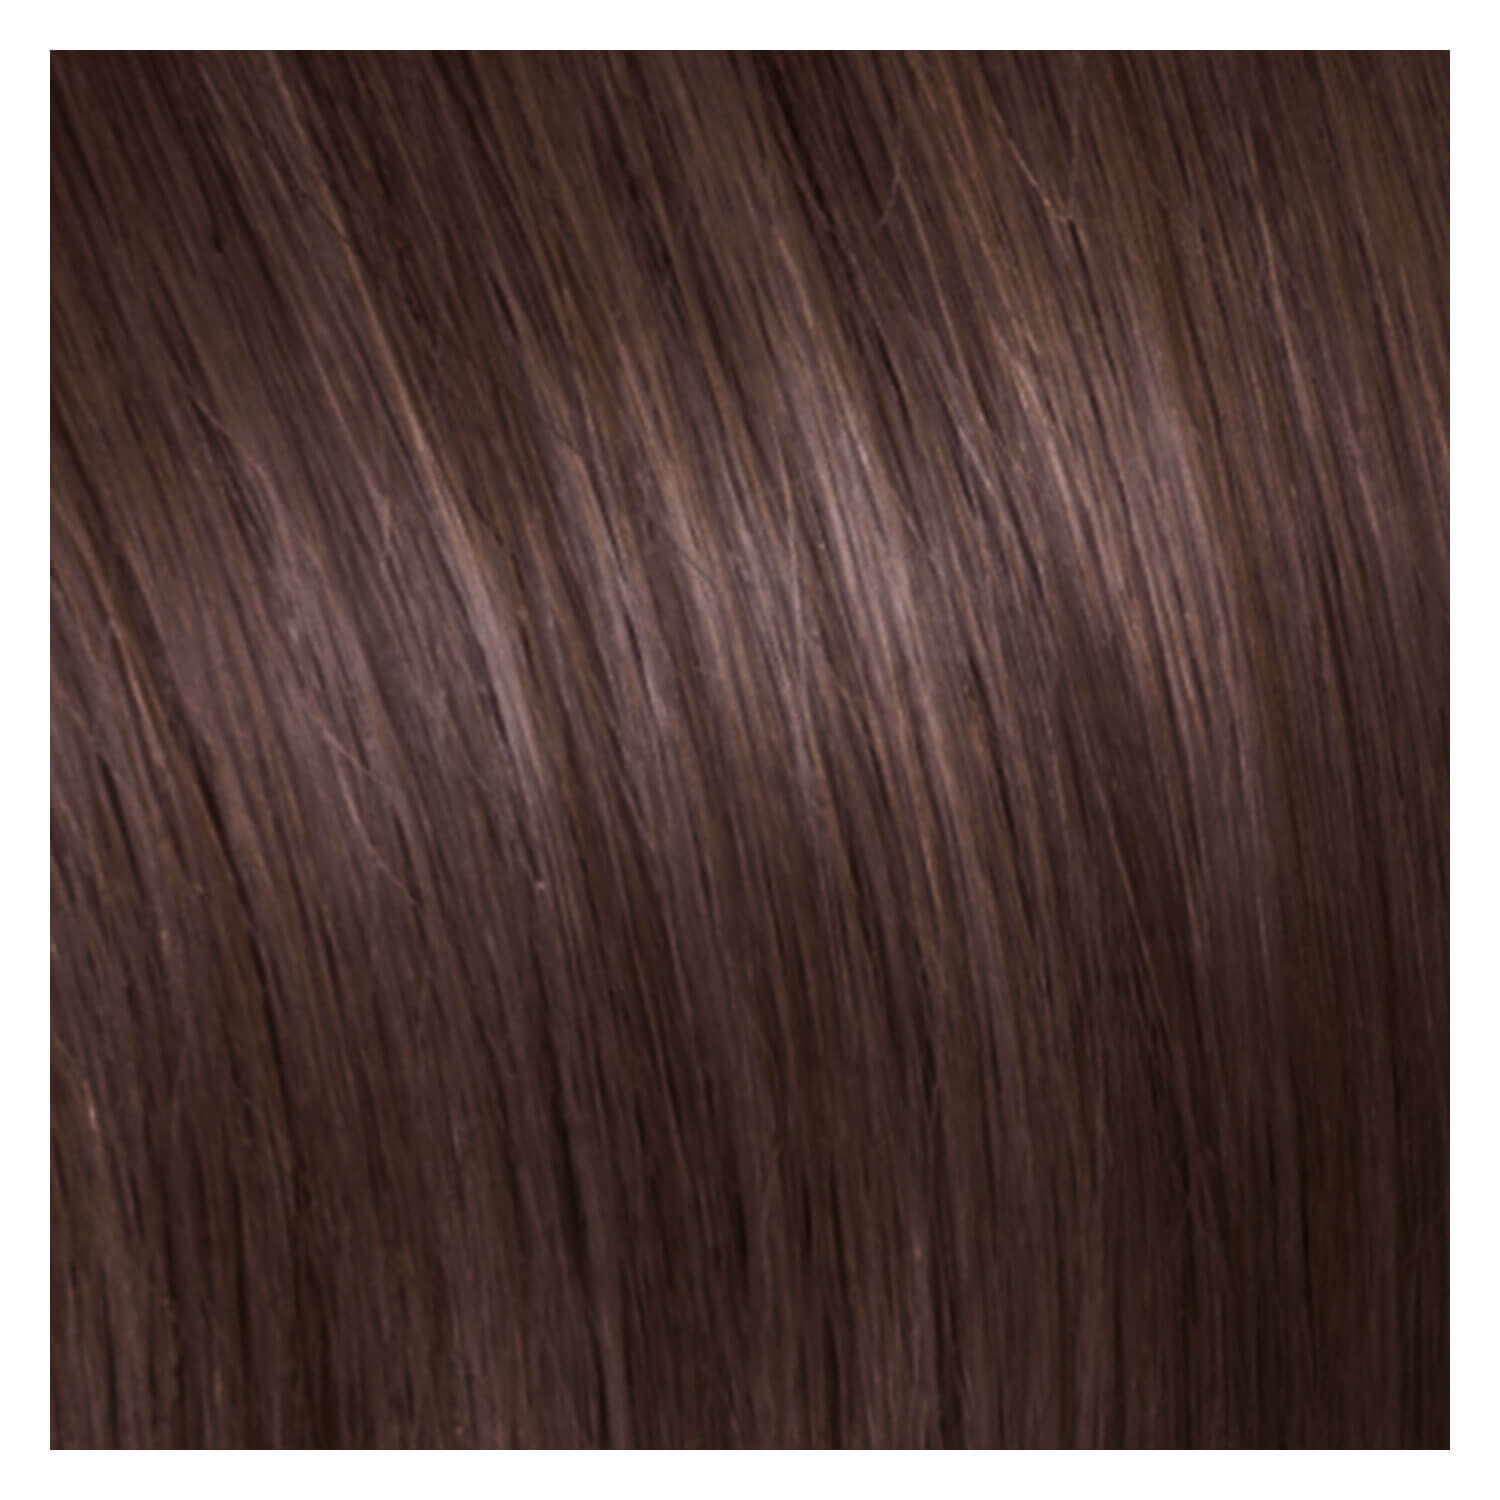 Produktbild von SHE Clip In-System Hair Extensions - 9-teiliges Set 8 Dunkelblond 50/55cm